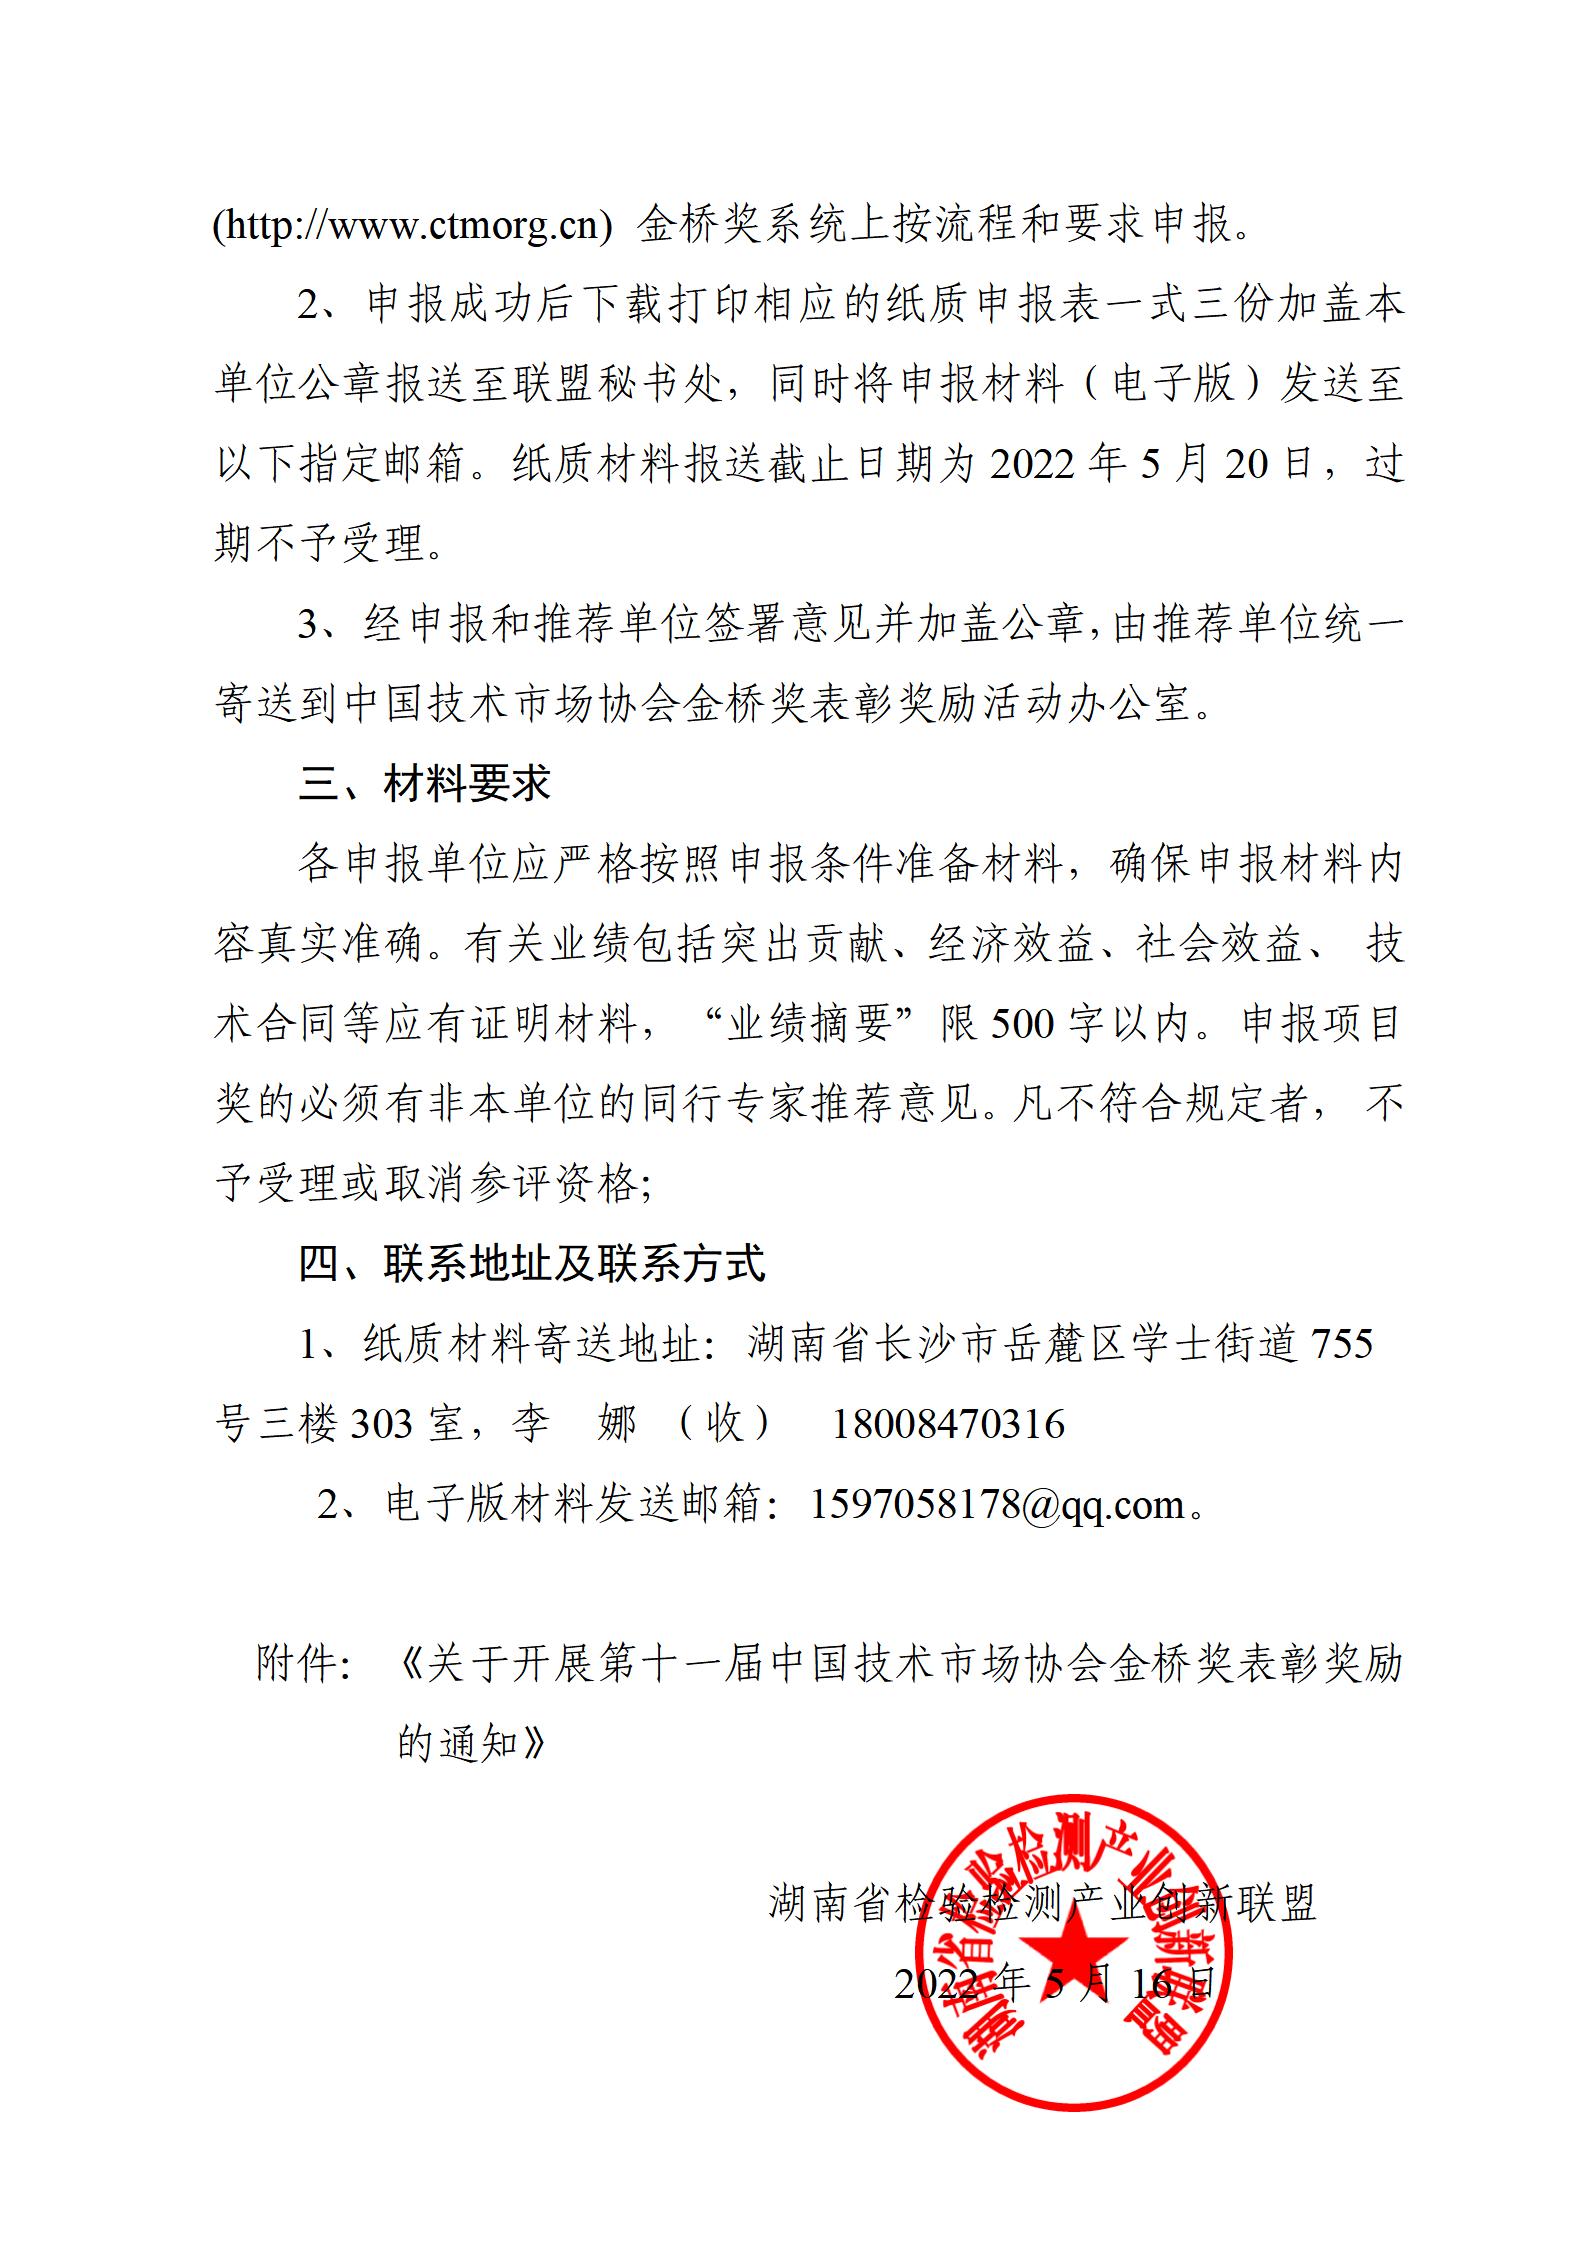 关于组织申报第十一届中国技术市场协会金桥奖表彰奖励的通知_02.jpg